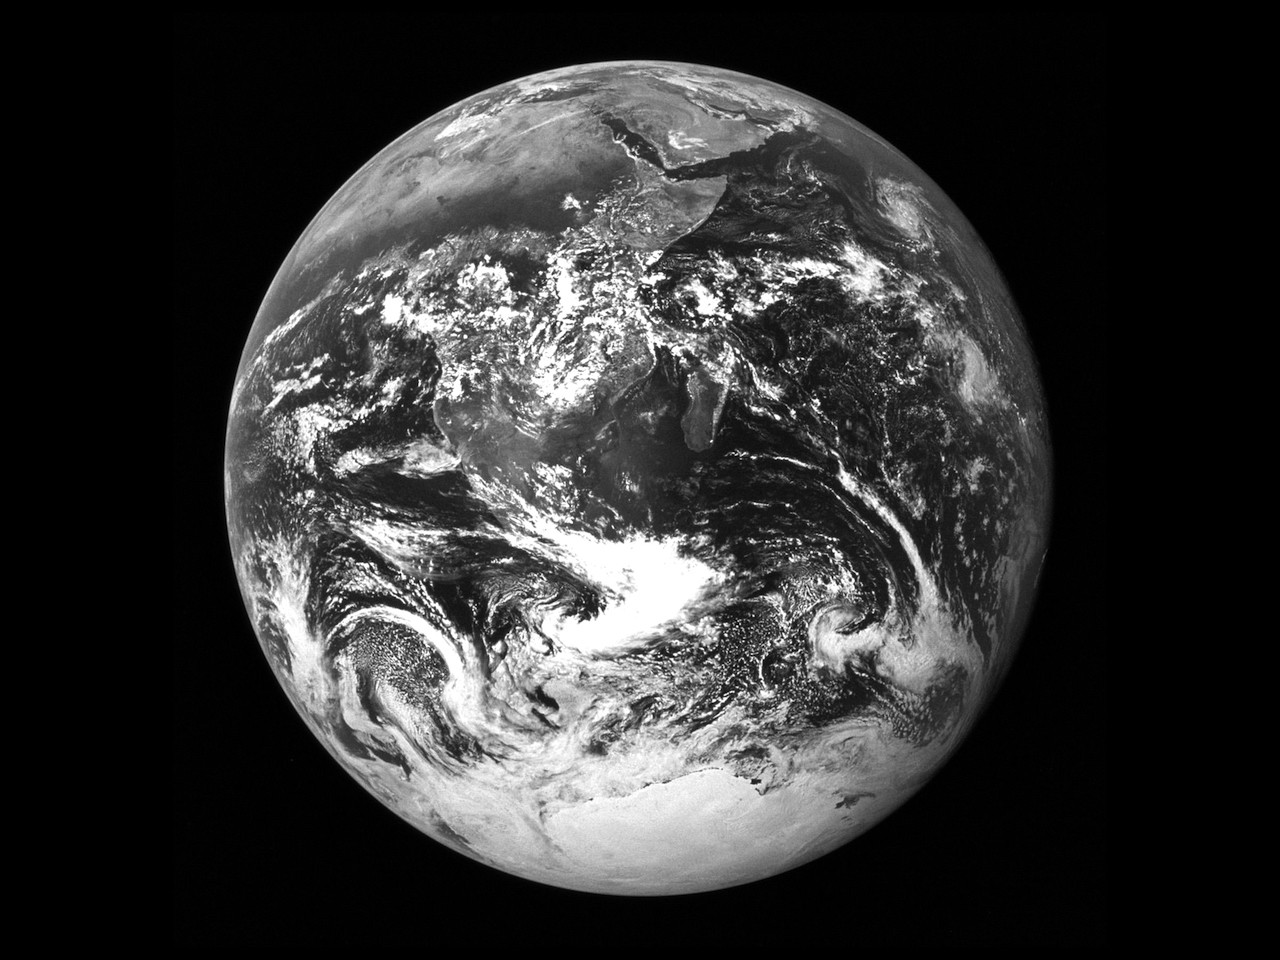 Фотография NASA Image AS17-148-22727&nbsp;была сделана Харрисоном Шмиттом, последним и&nbsp;единственным гражданским лицом, ходившим по&nbsp;Луне, используя 70-миллиметровую камеру Хасселблада с&nbsp;80-миллиметровой линзой Цейсса. В&nbsp;настоящее время она является самой воспроизводимой в&nbsp;истории и&nbsp;быстро заменила напечатанную на&nbsp;экране версию изображения ATS-3 на&nbsp;флаге Дня Земли Джона Макконнелла.